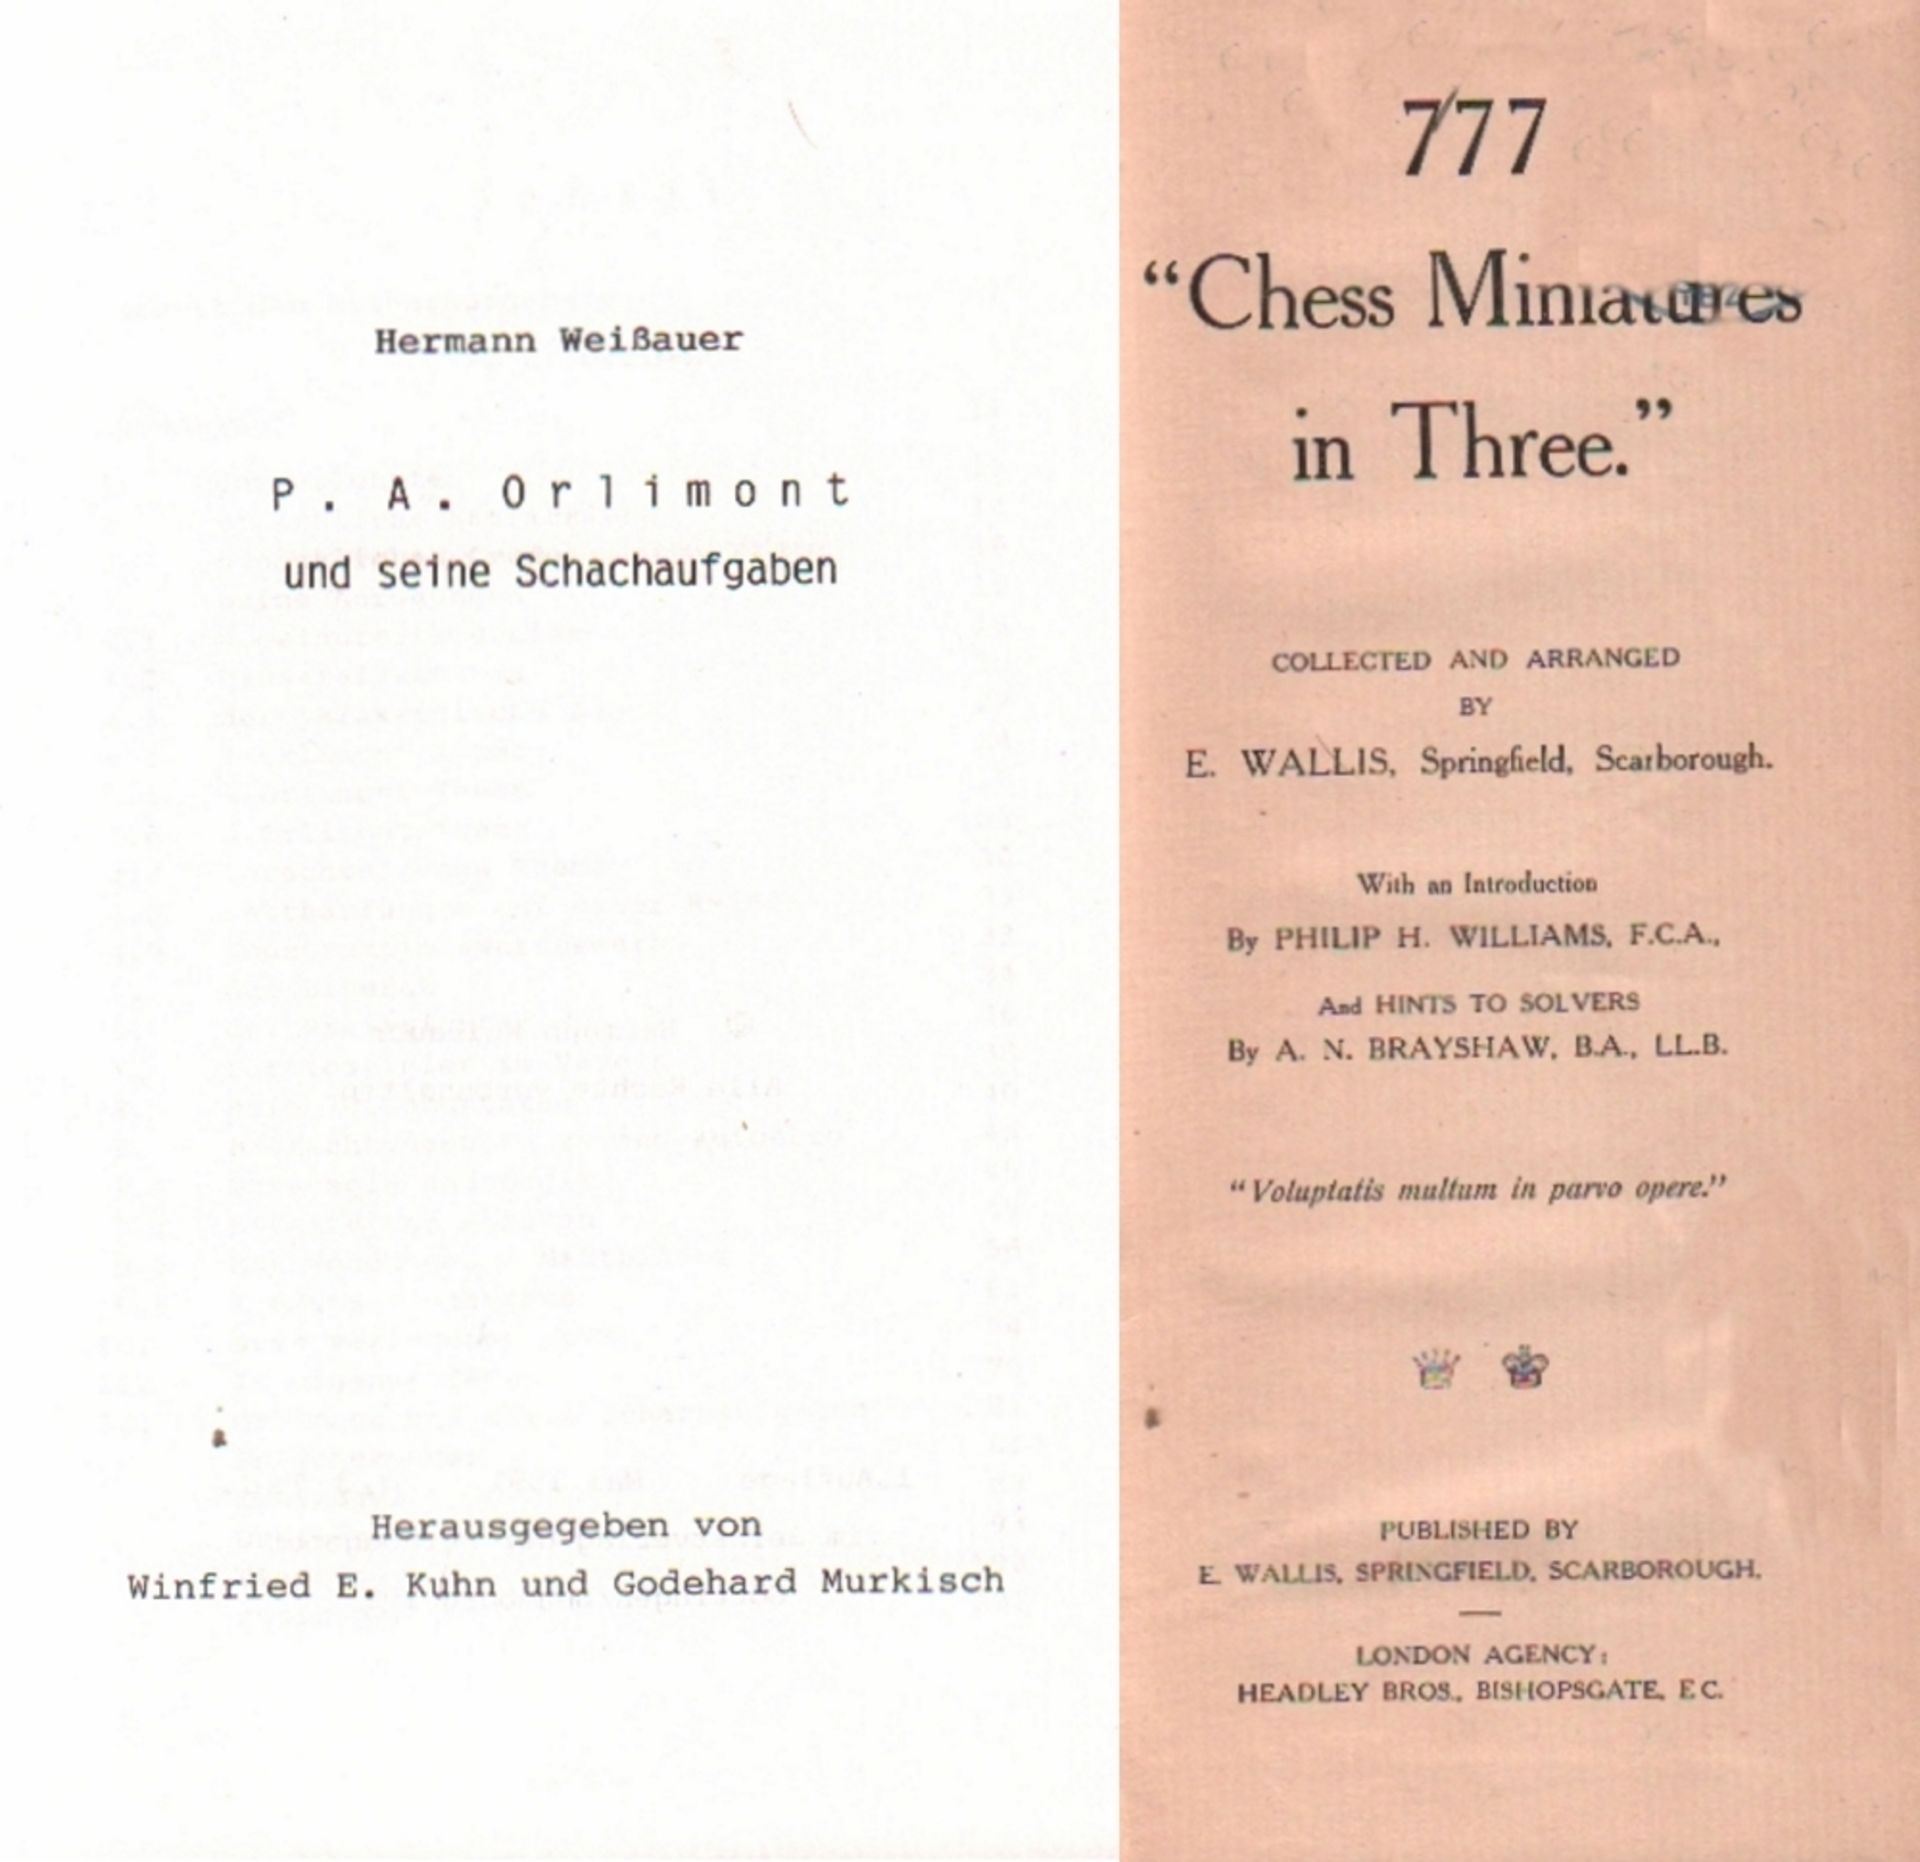 Orlimont. Weißauer, Hermann. P. A. Orlimont und seine Schachaufgaben. Hrsg. von W. E. Kuhn und G.